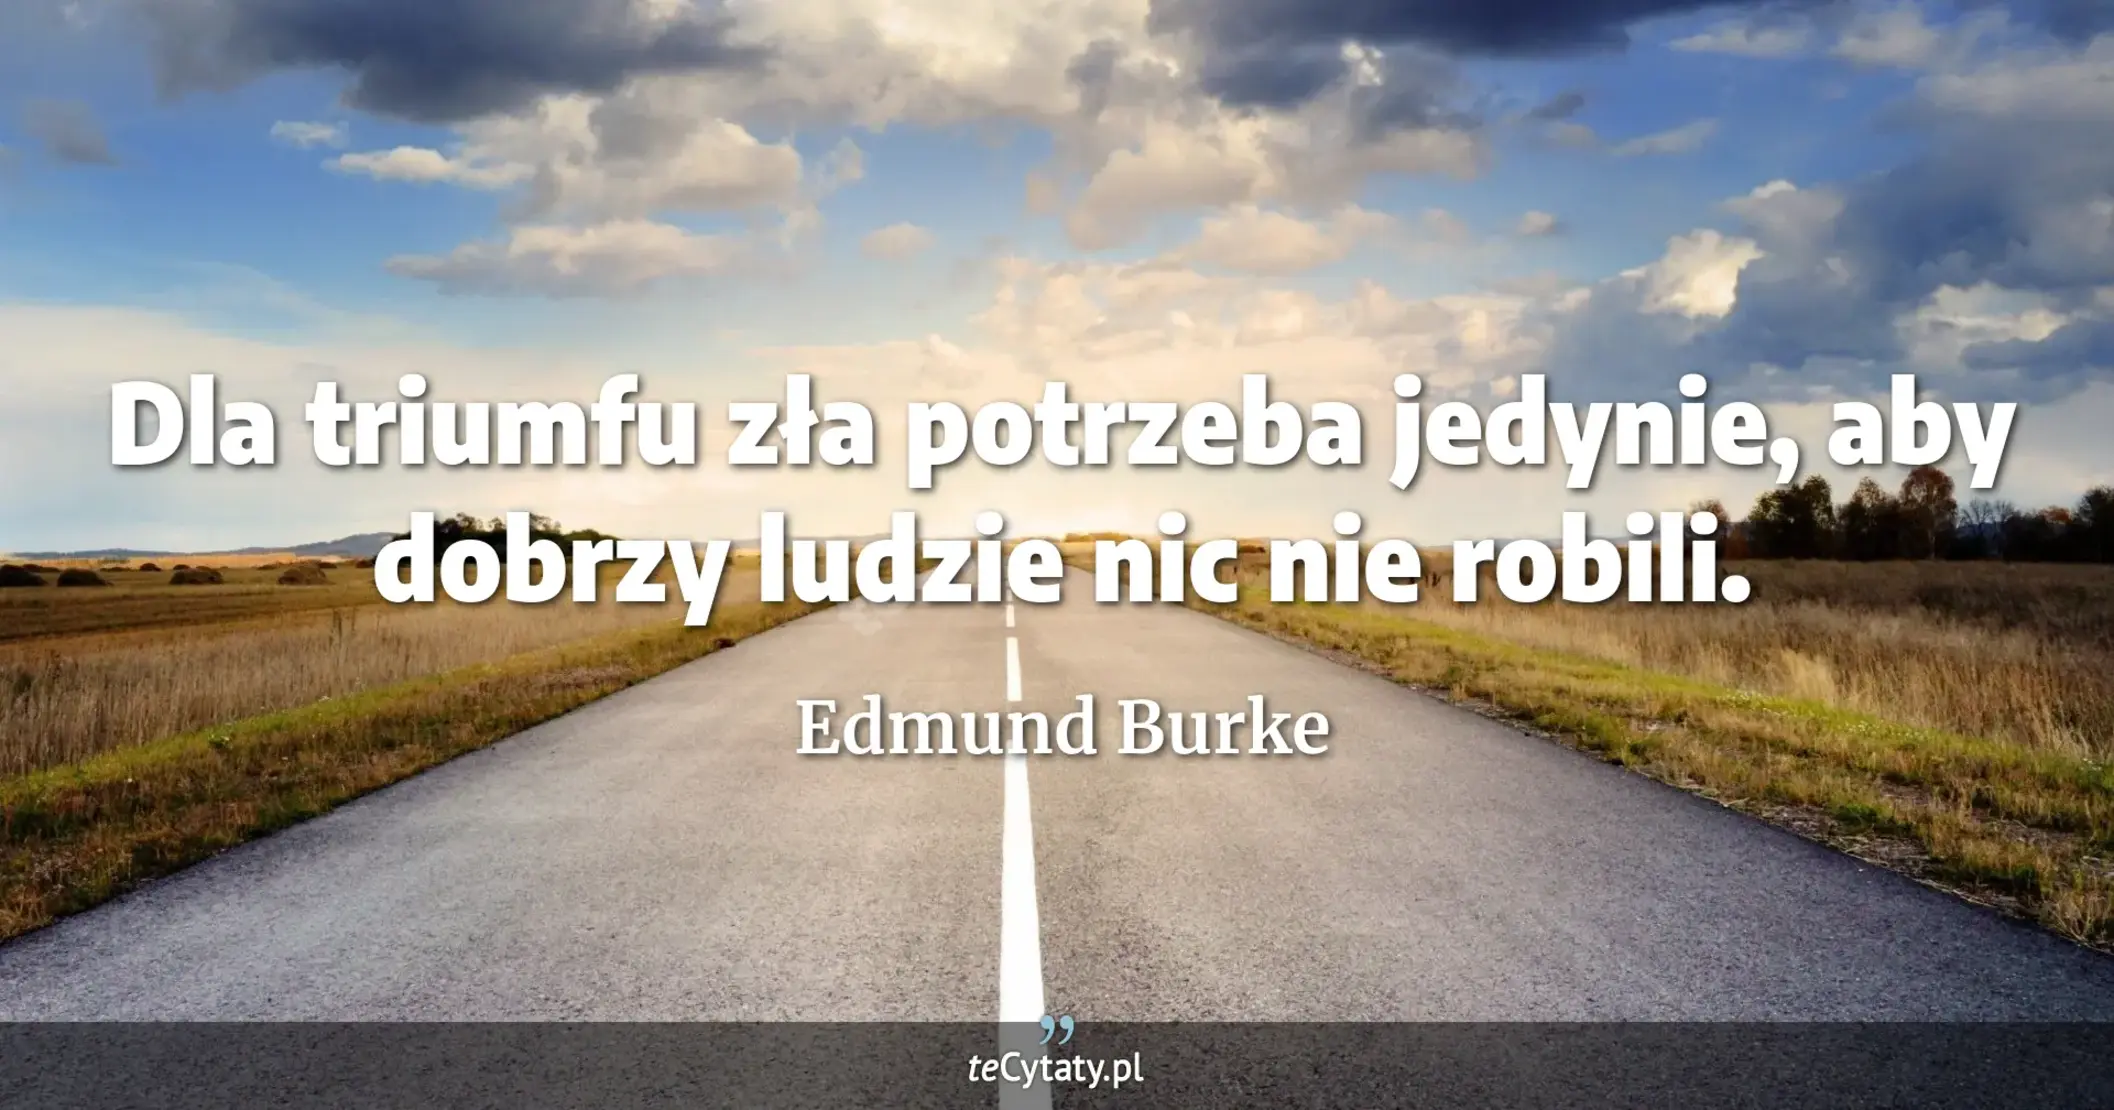 Dla triumfu zła potrzeba jedynie, aby dobrzy ludzie nic nie robili. - Edmund Burke